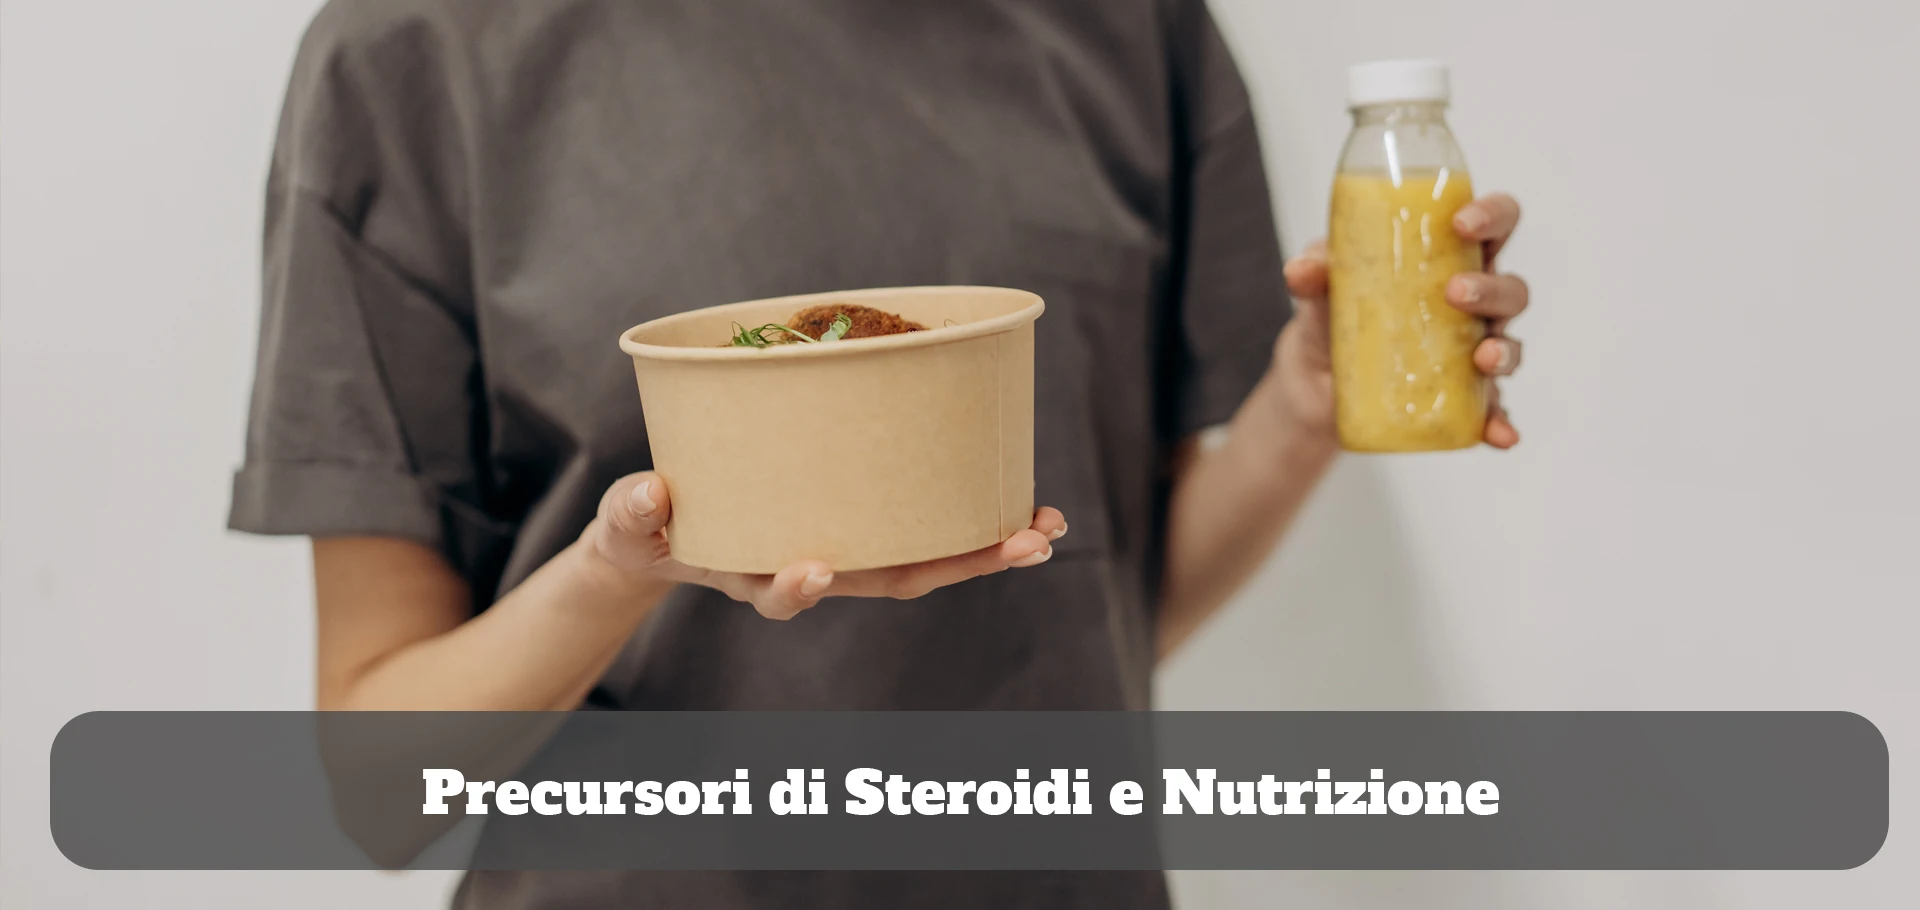 Precursori di Steroidi e Nutrizione